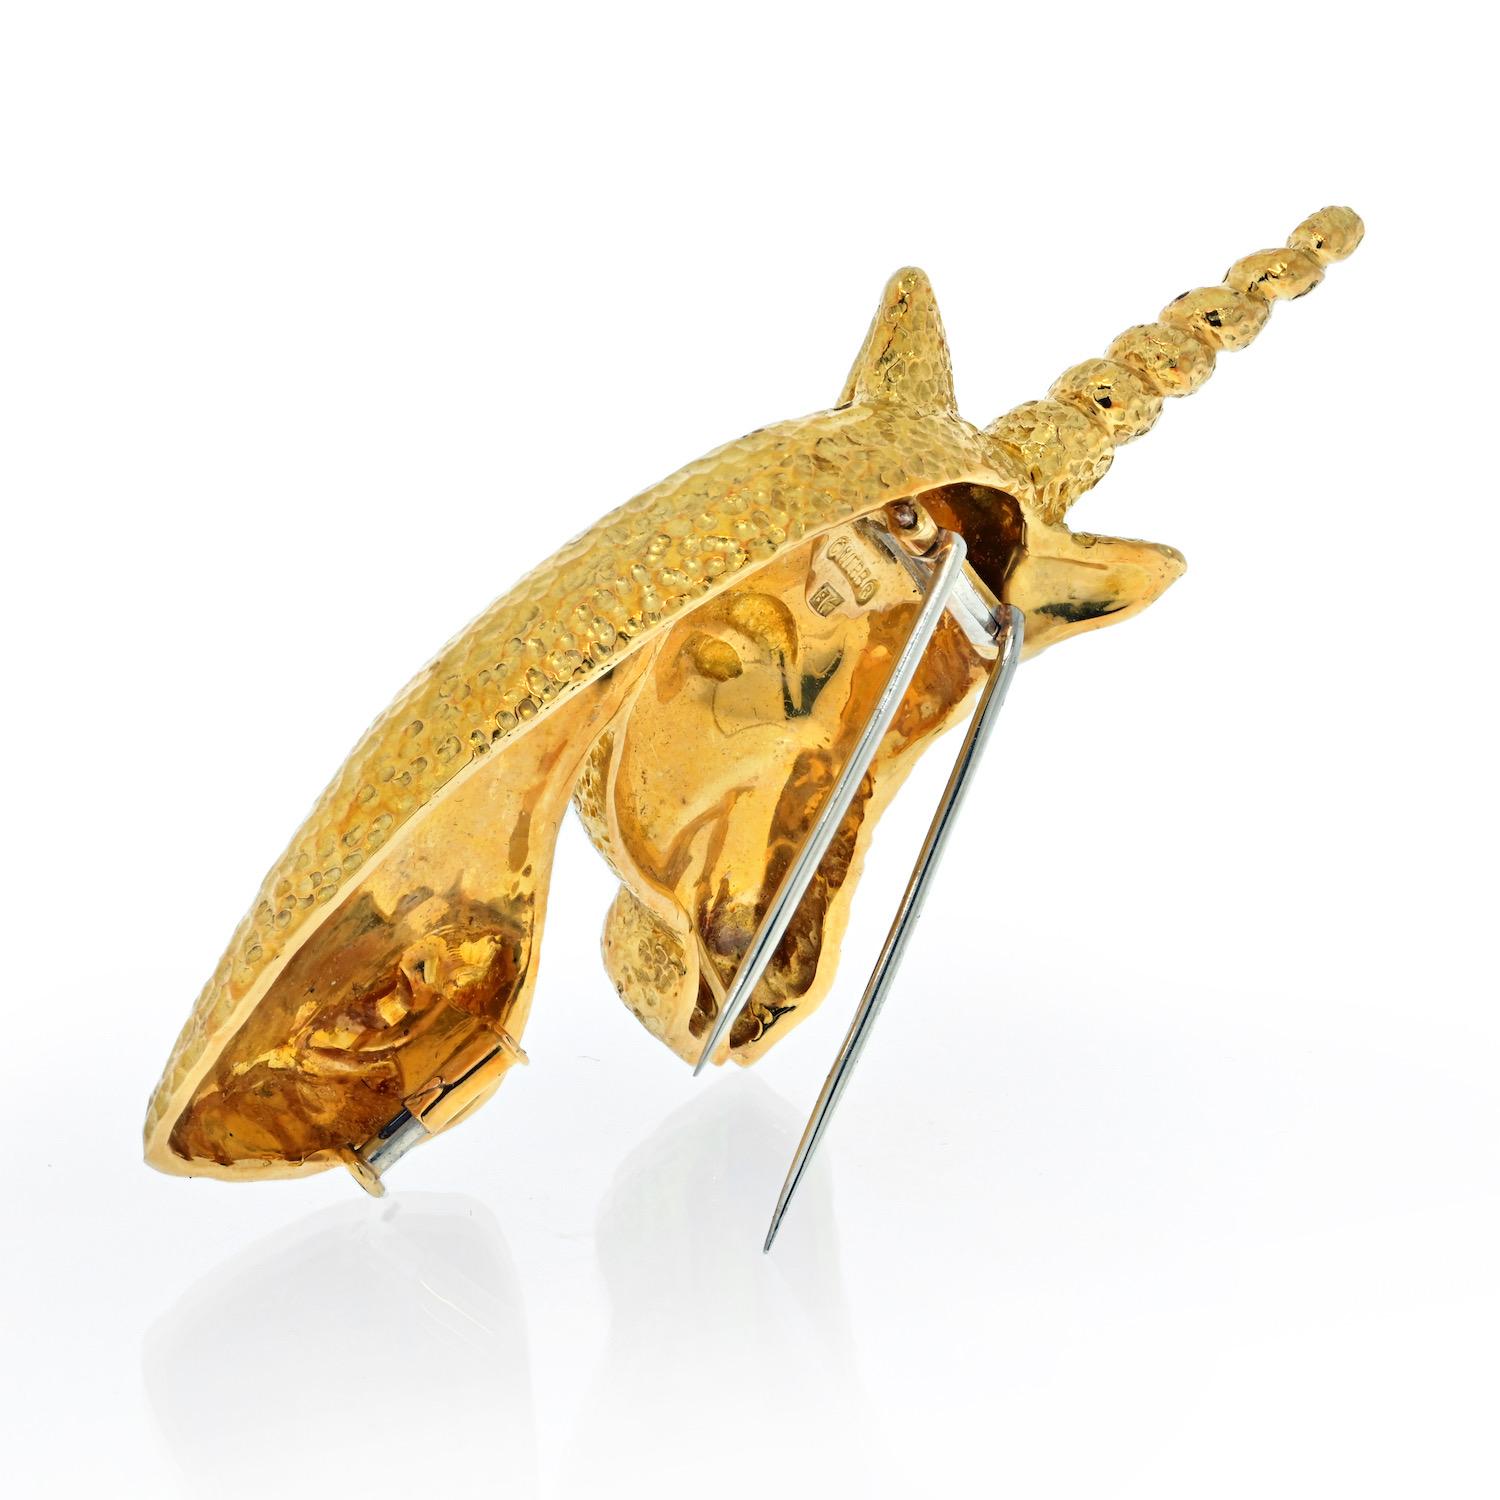 Cette broche licorne de David Webb, aux détails exquis, est aussi intrigante que belle. Réalisé en or jaune pur 18 carats, avec une magnifique finition martelée or.
Cette broche mesure environ 7 cm de long.
